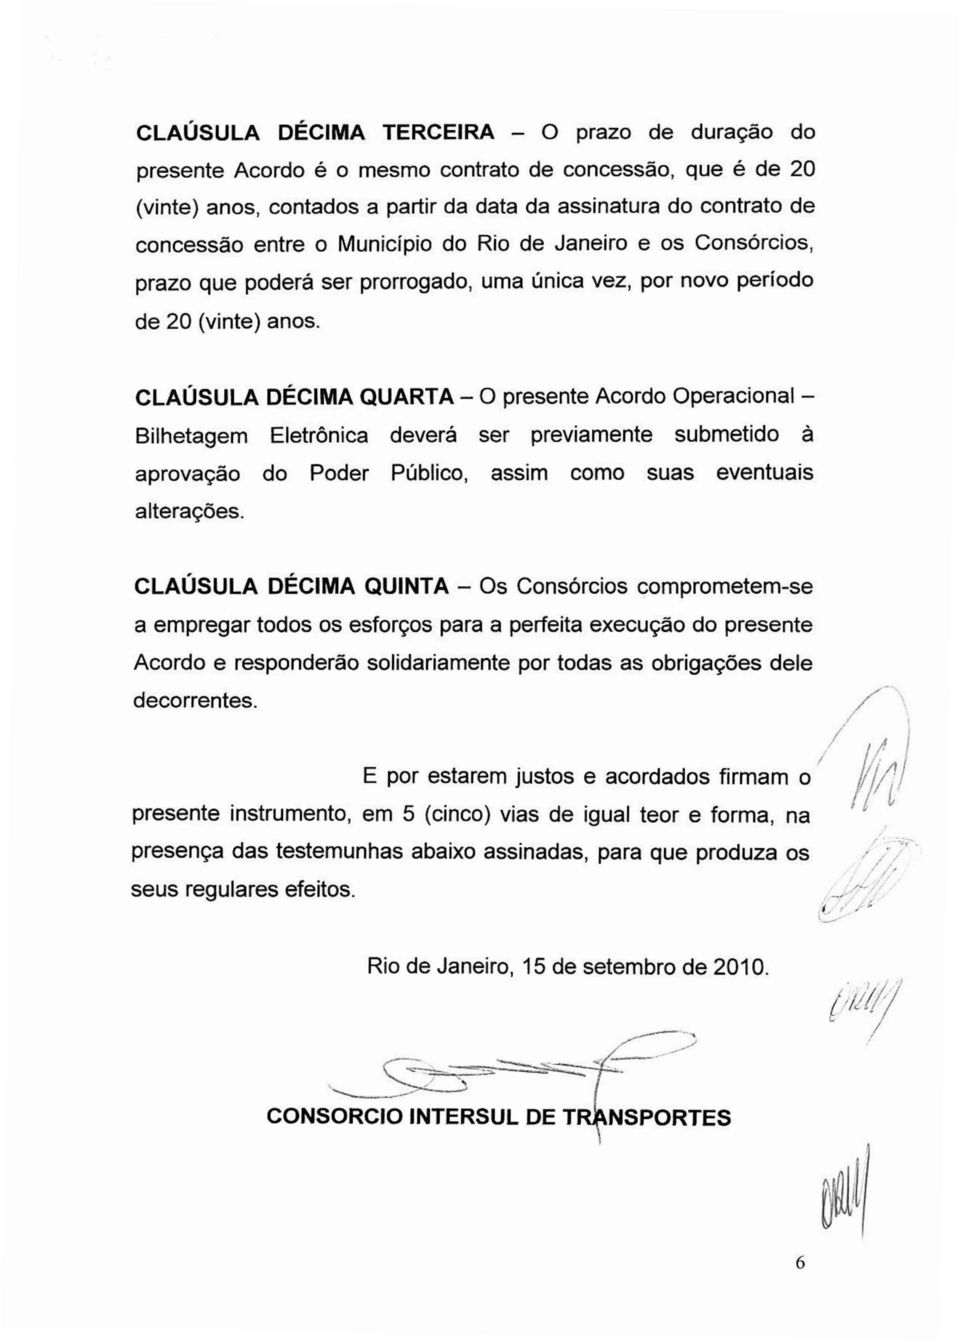 CLAÚSULA DÉCIMA QUARTA- O presente Acordo Operacional- Bilhetagem Eletrônica deverá ser previamente submetido à aprovação do Poder Público, assim como suas eventuais alterações.